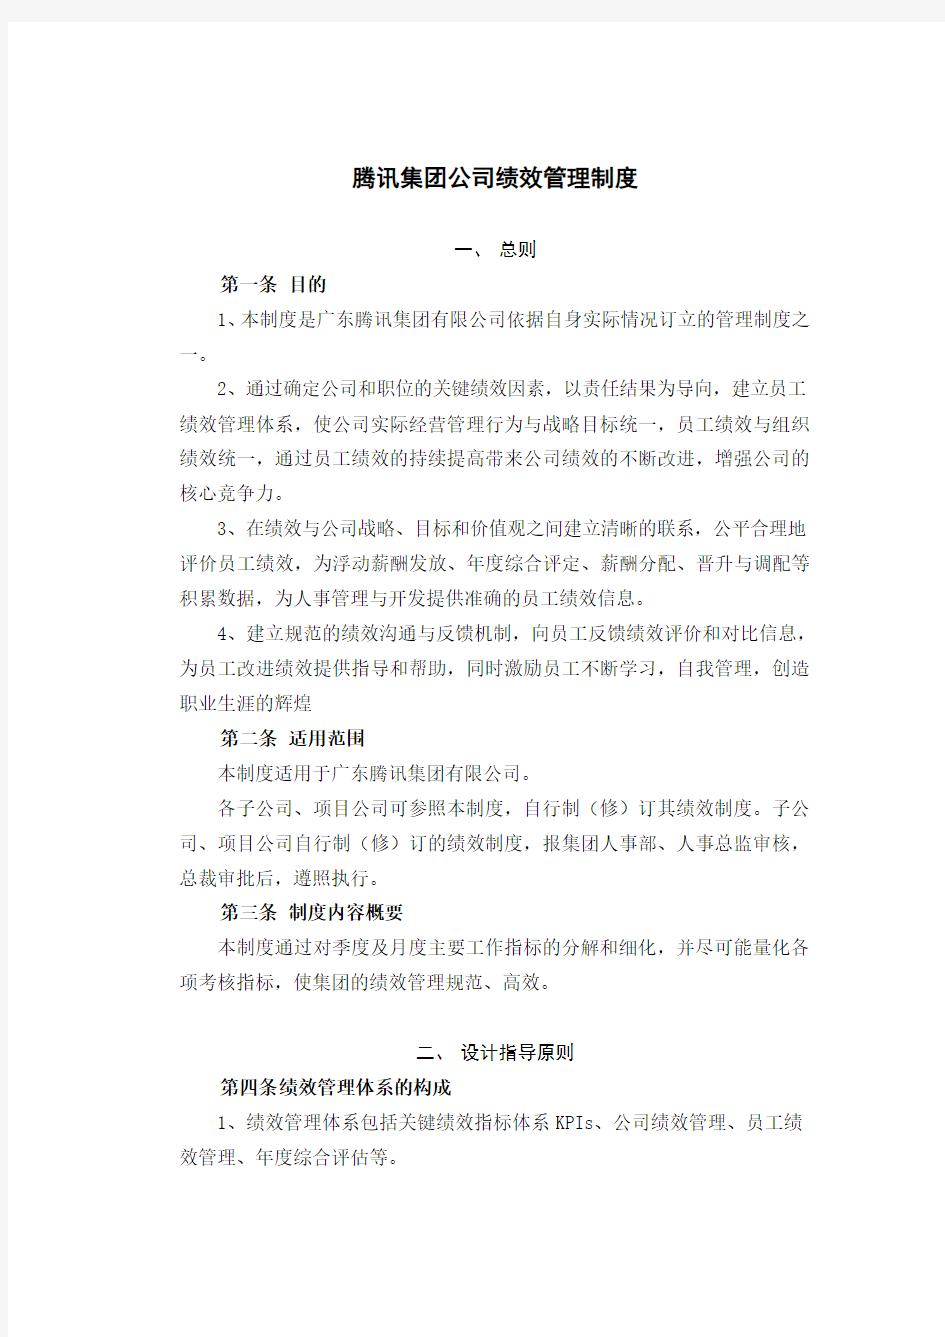 【案例】中国腾讯公司绩效管理制度